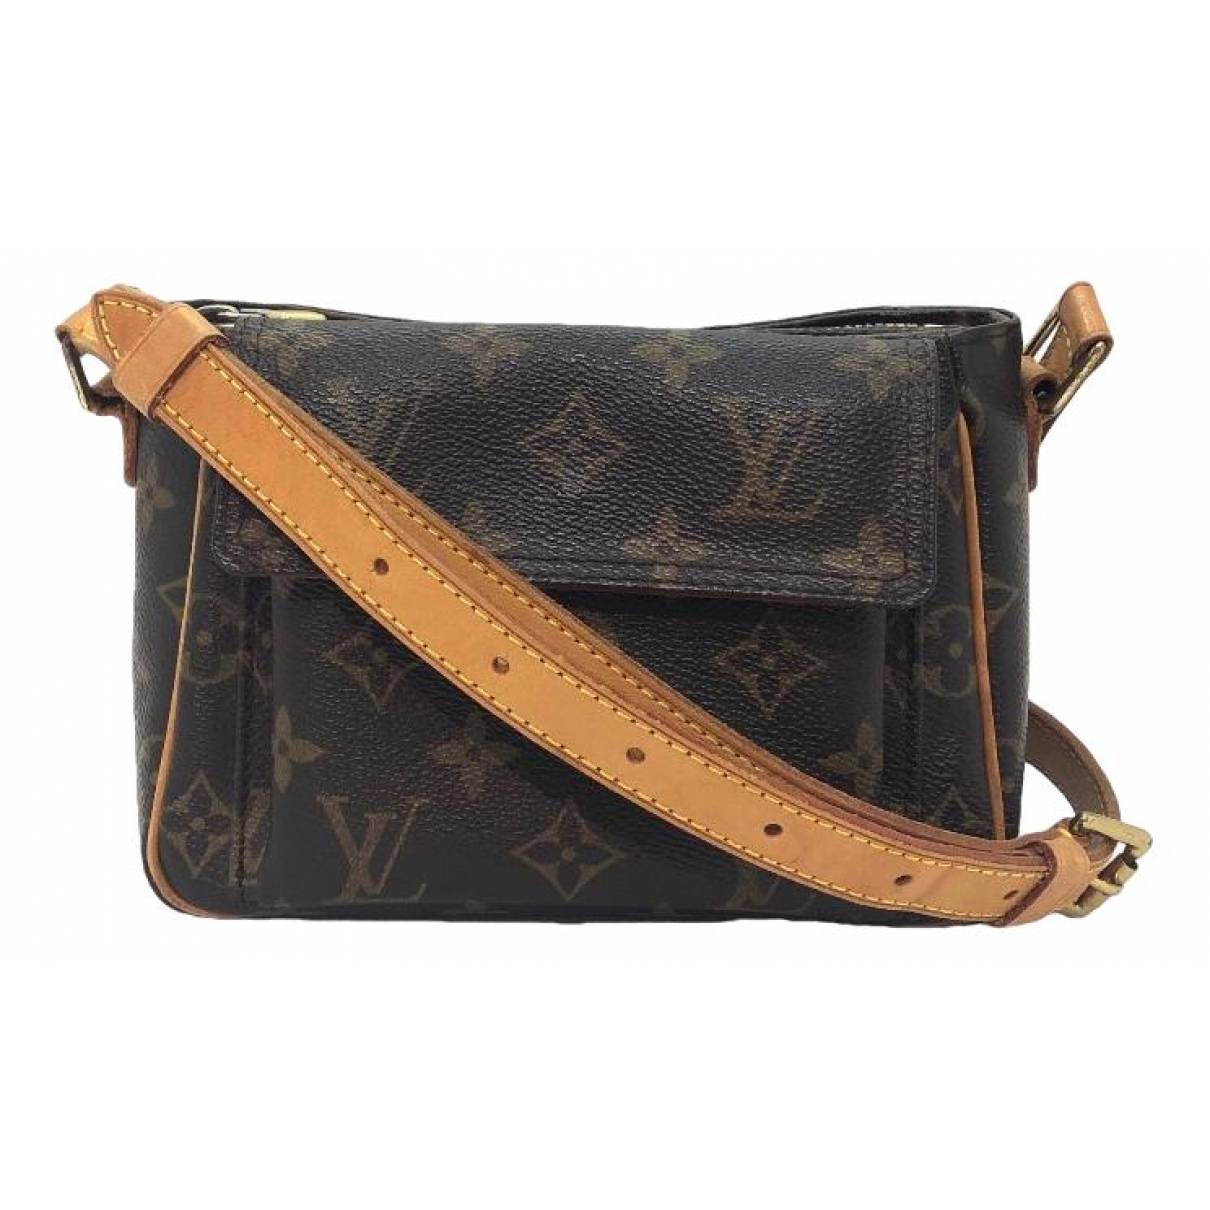 Louis Vuitton - Authenticated Viva Cité Handbag - Leather Brown Plain for Women, Good Condition